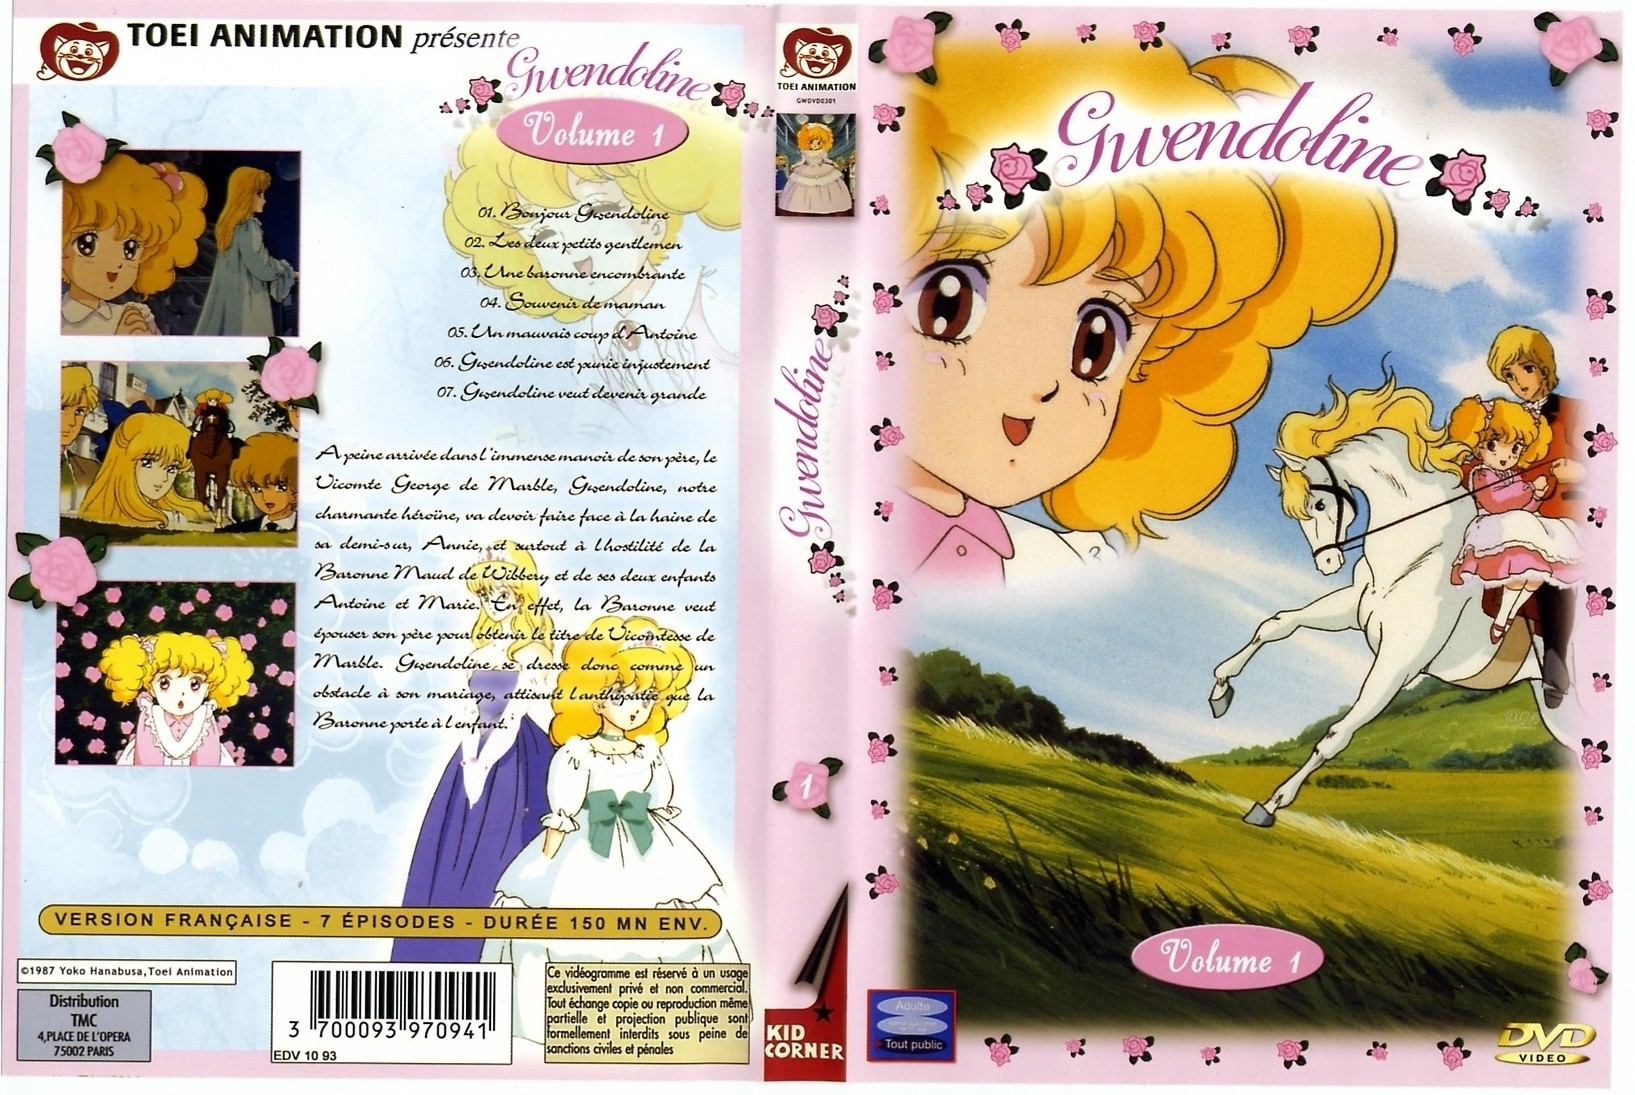 Jaquette DVD Gwendoline vol 1